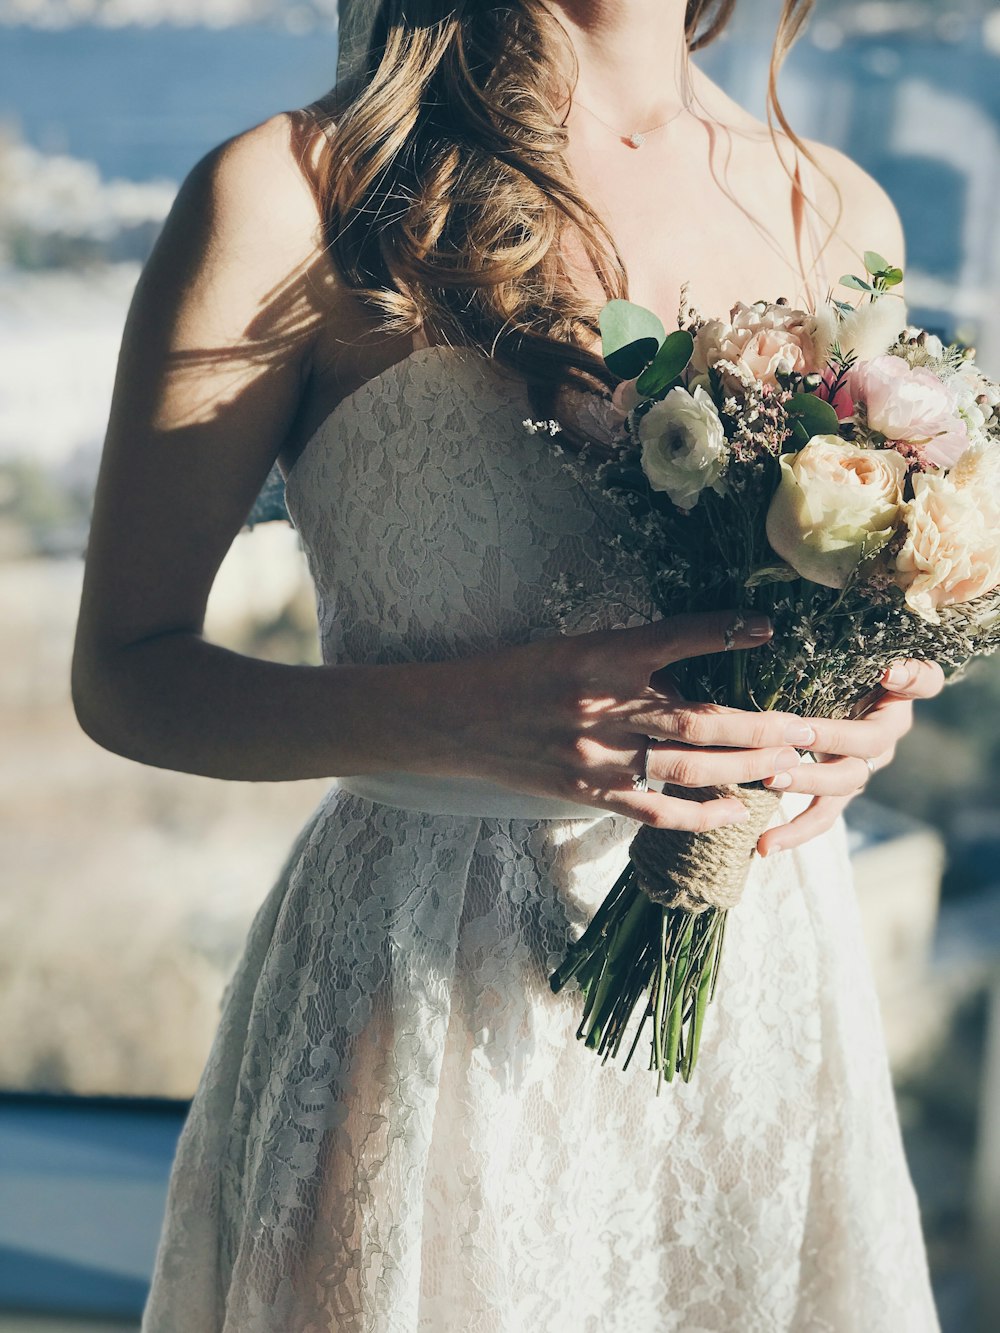 꽃을 들고 흰색 꽃무늬 끈이 없는 드레스를 입은 여자